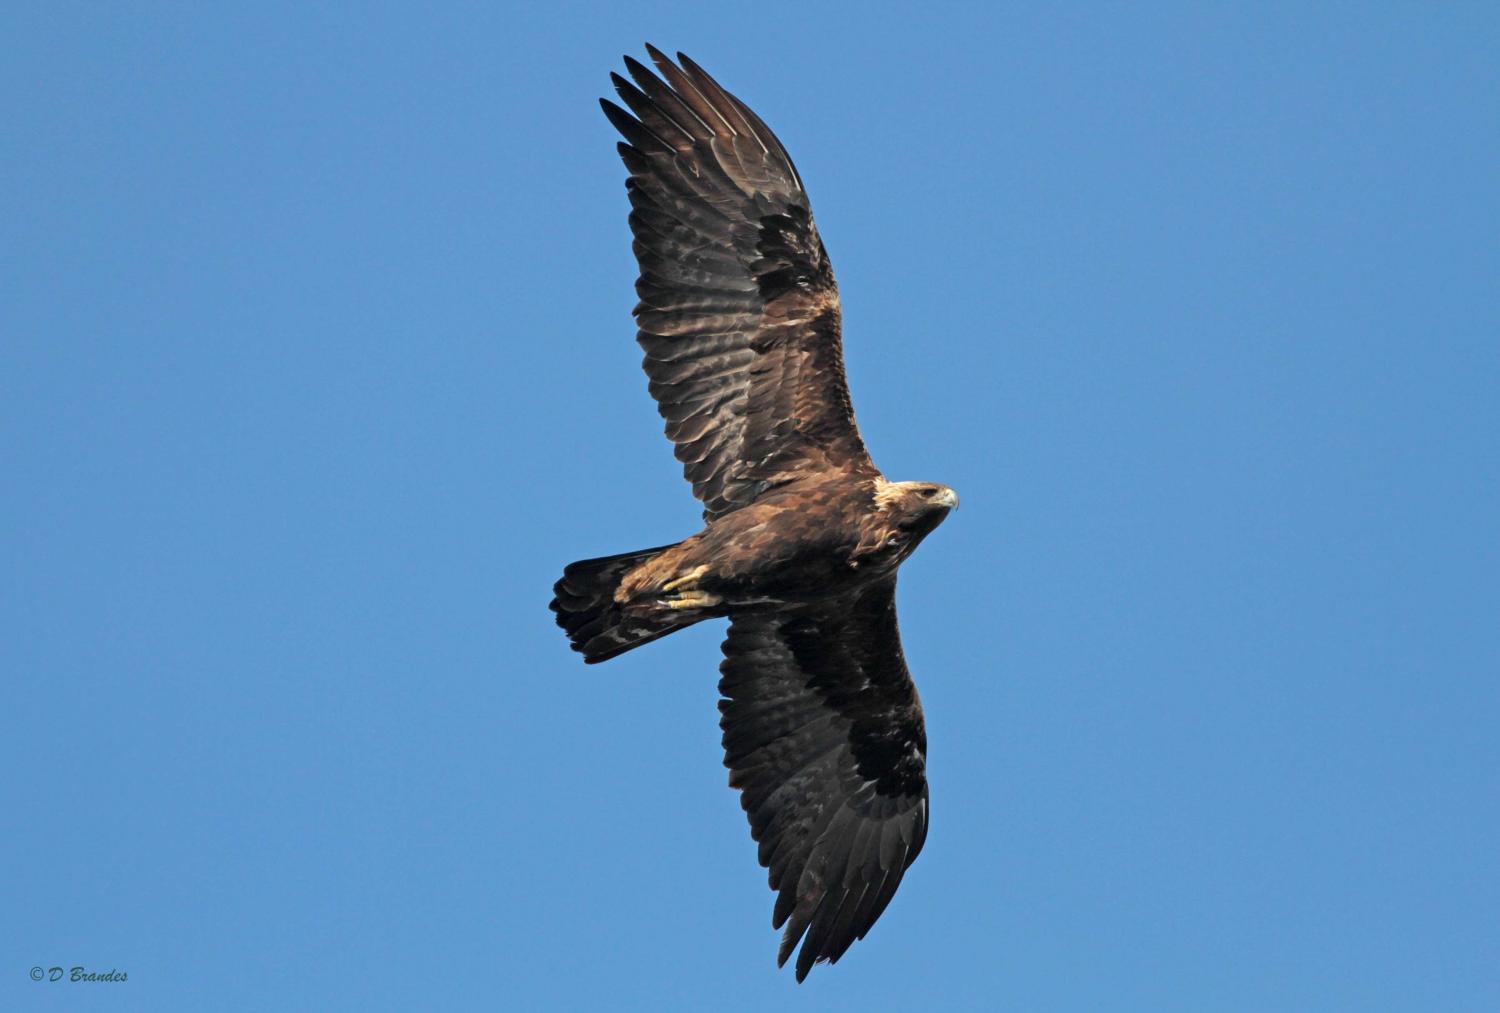 Migratory Patterns Of Eastern Golden Eagle Population Revealed,Leftover Tri Tip Recipes